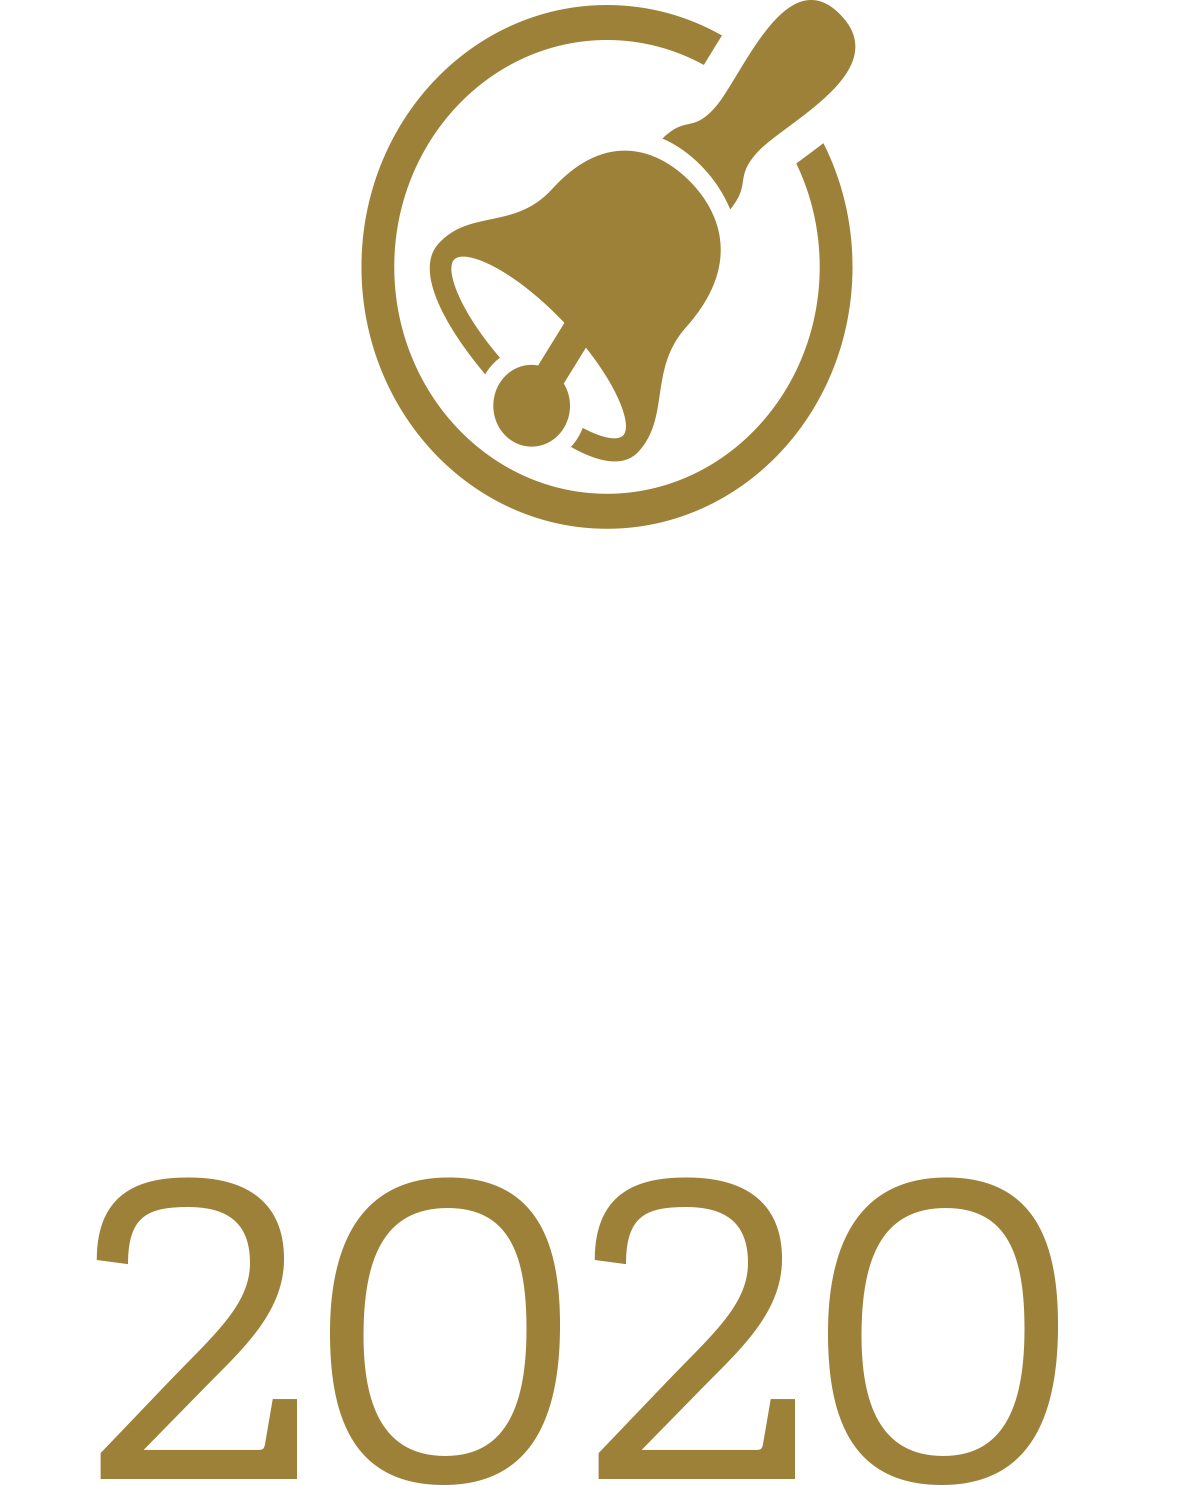 CSBA's Golden Bell Awards 2020 logo